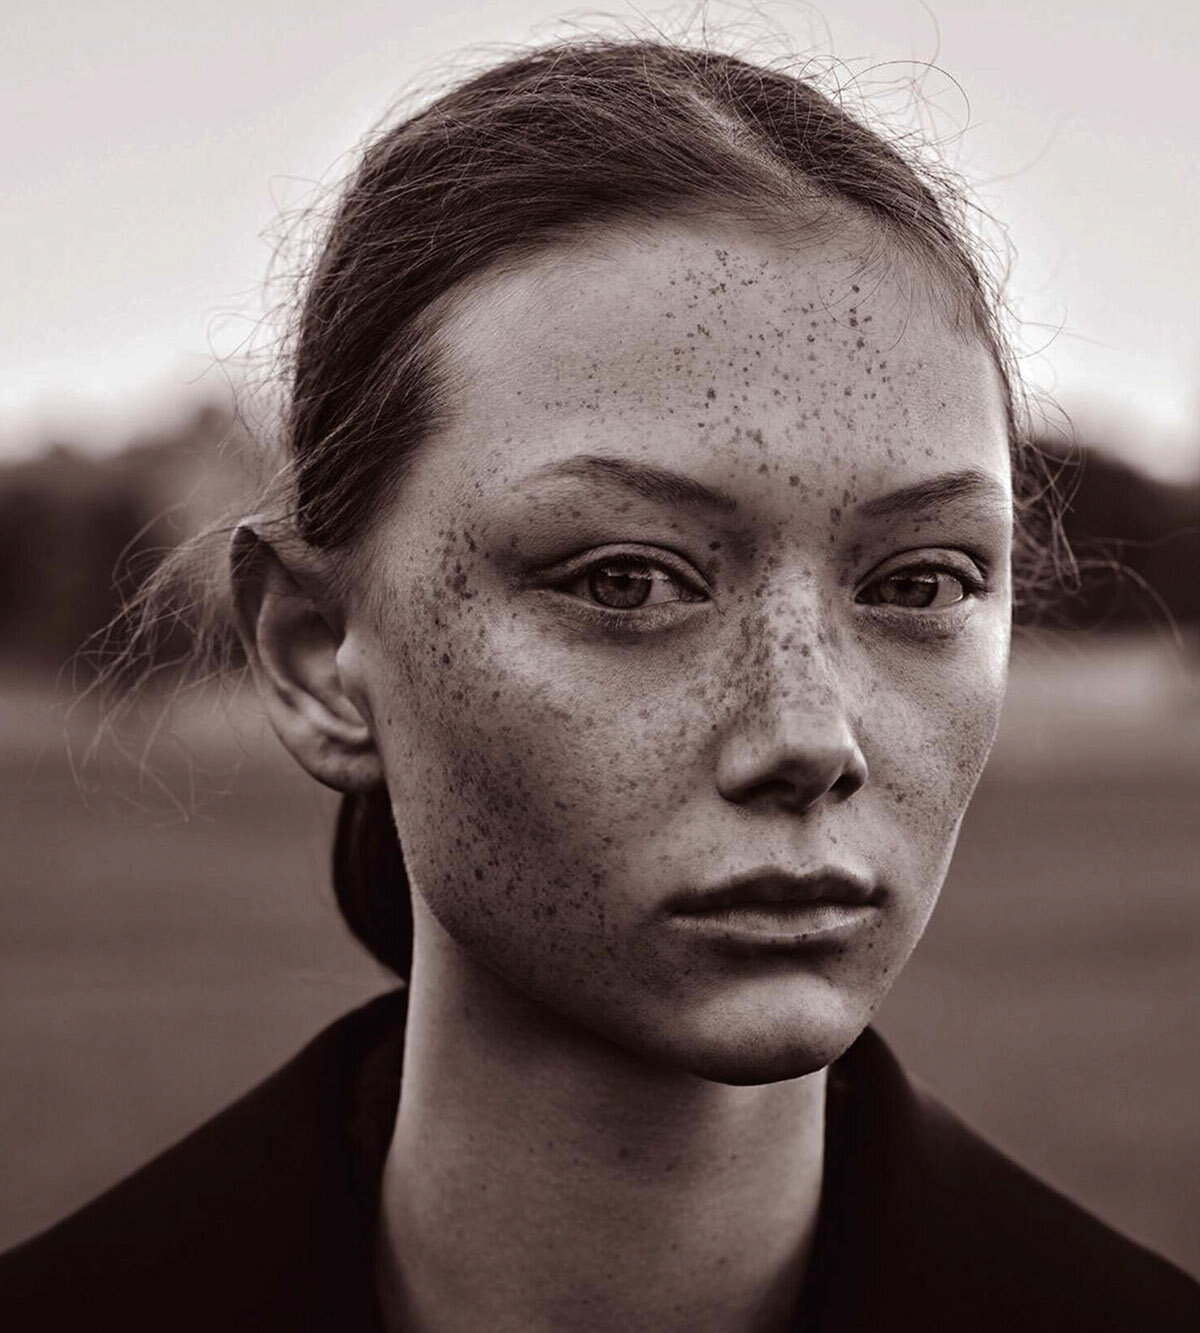 Sara-Grace-Wallerstedt-by-Geordie-Wood-for-Vogue-Australia-July-2021-14.jpg